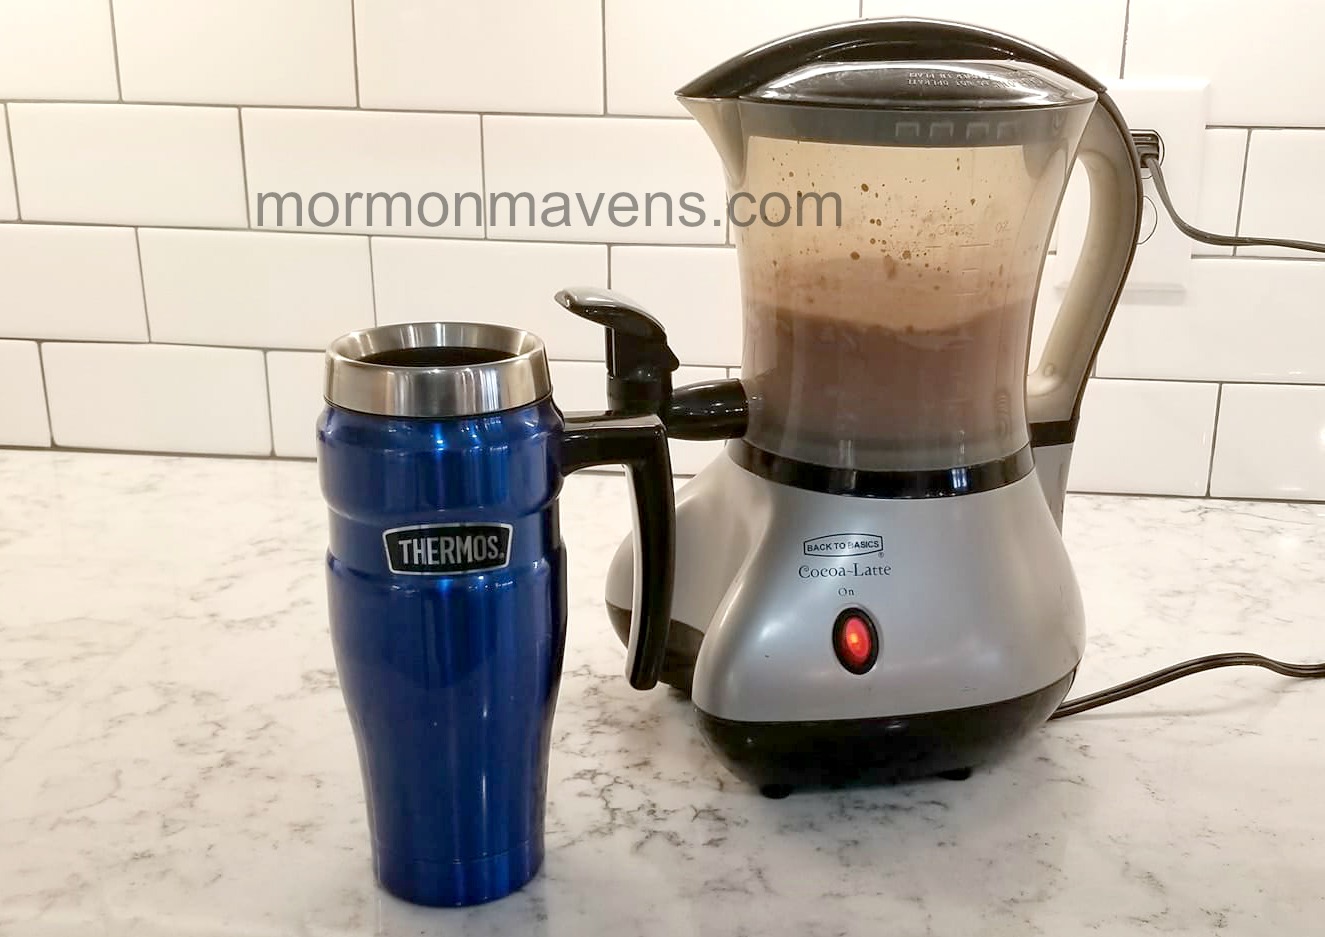 http://www.mormonmavens.com/wp-content/uploads/2018/01/cocoa-latte.jpg